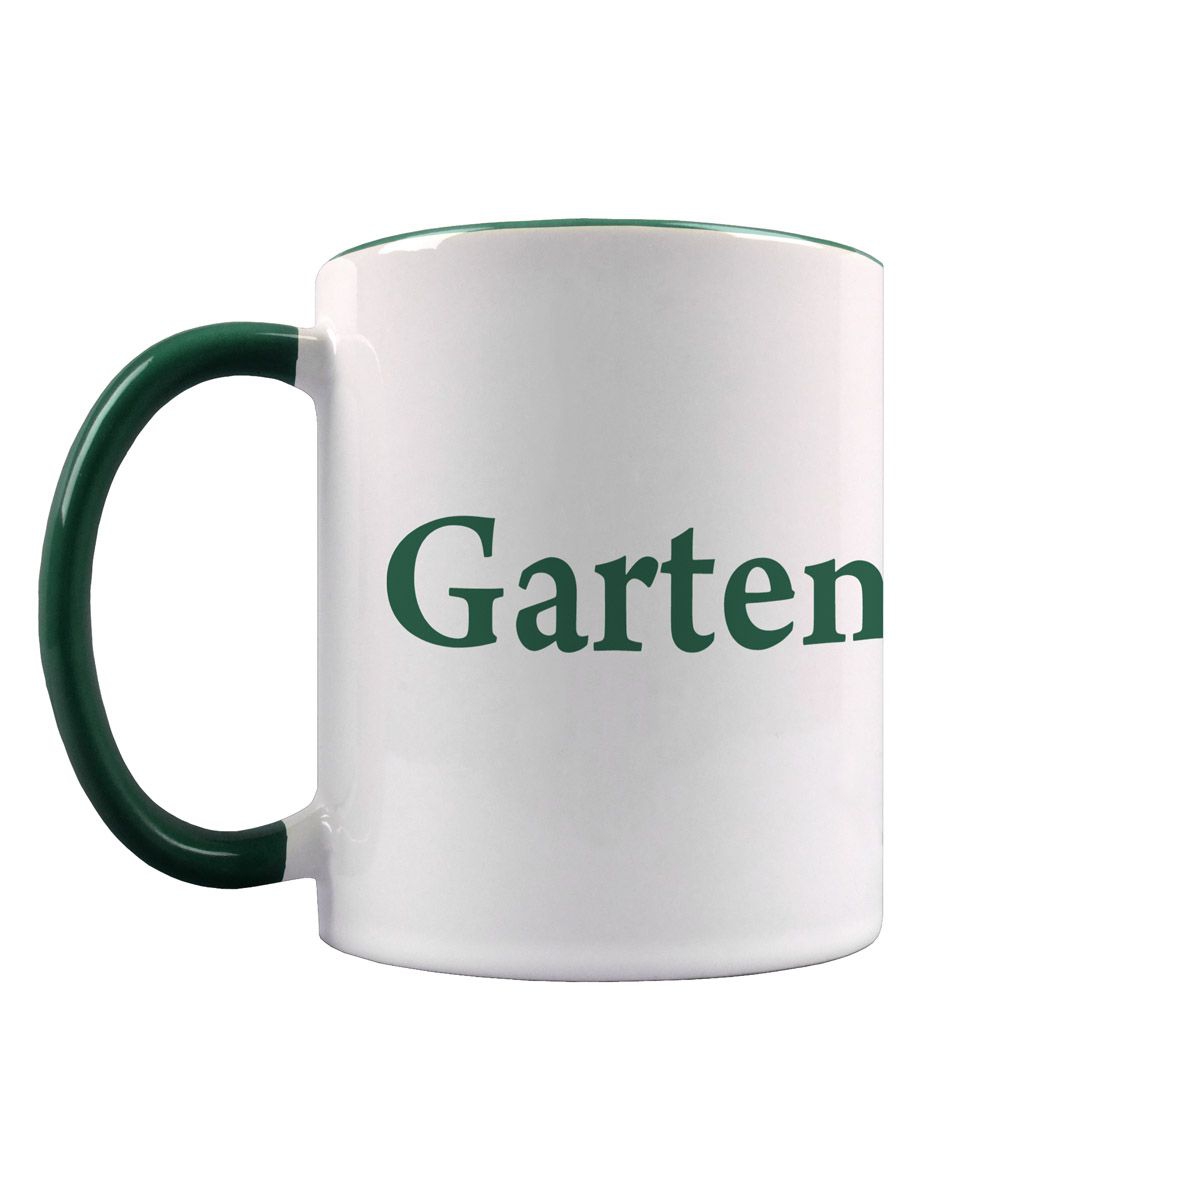 Gartengott Tasse dunkelgrün / weiß